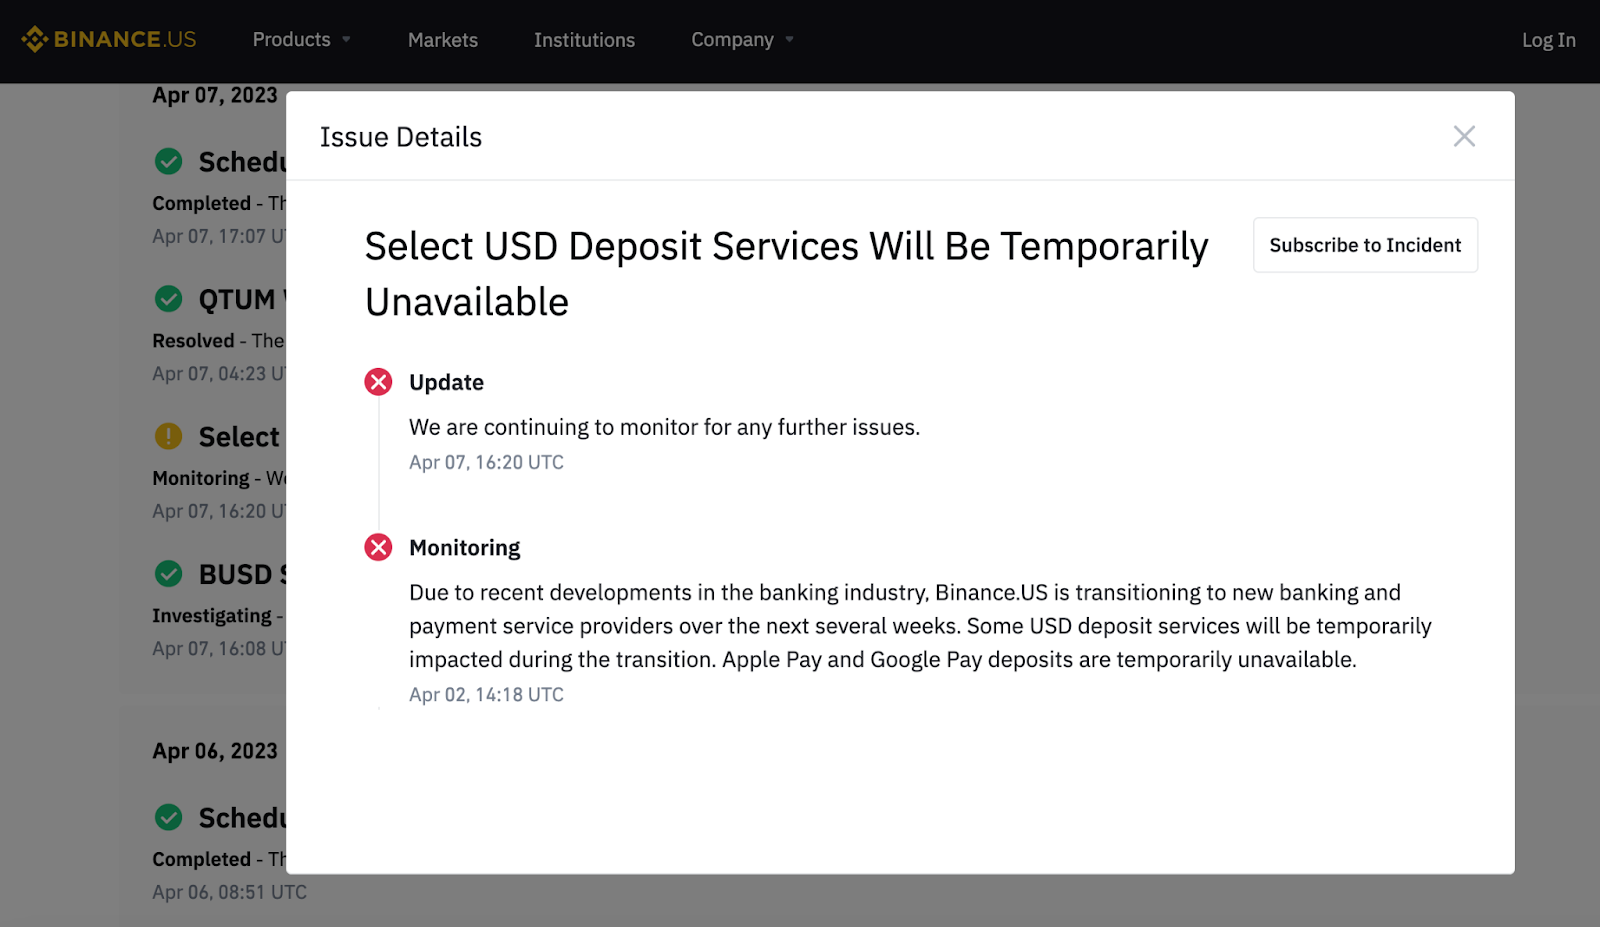 Binance.US Update on U.S. Dollar Deposit Services